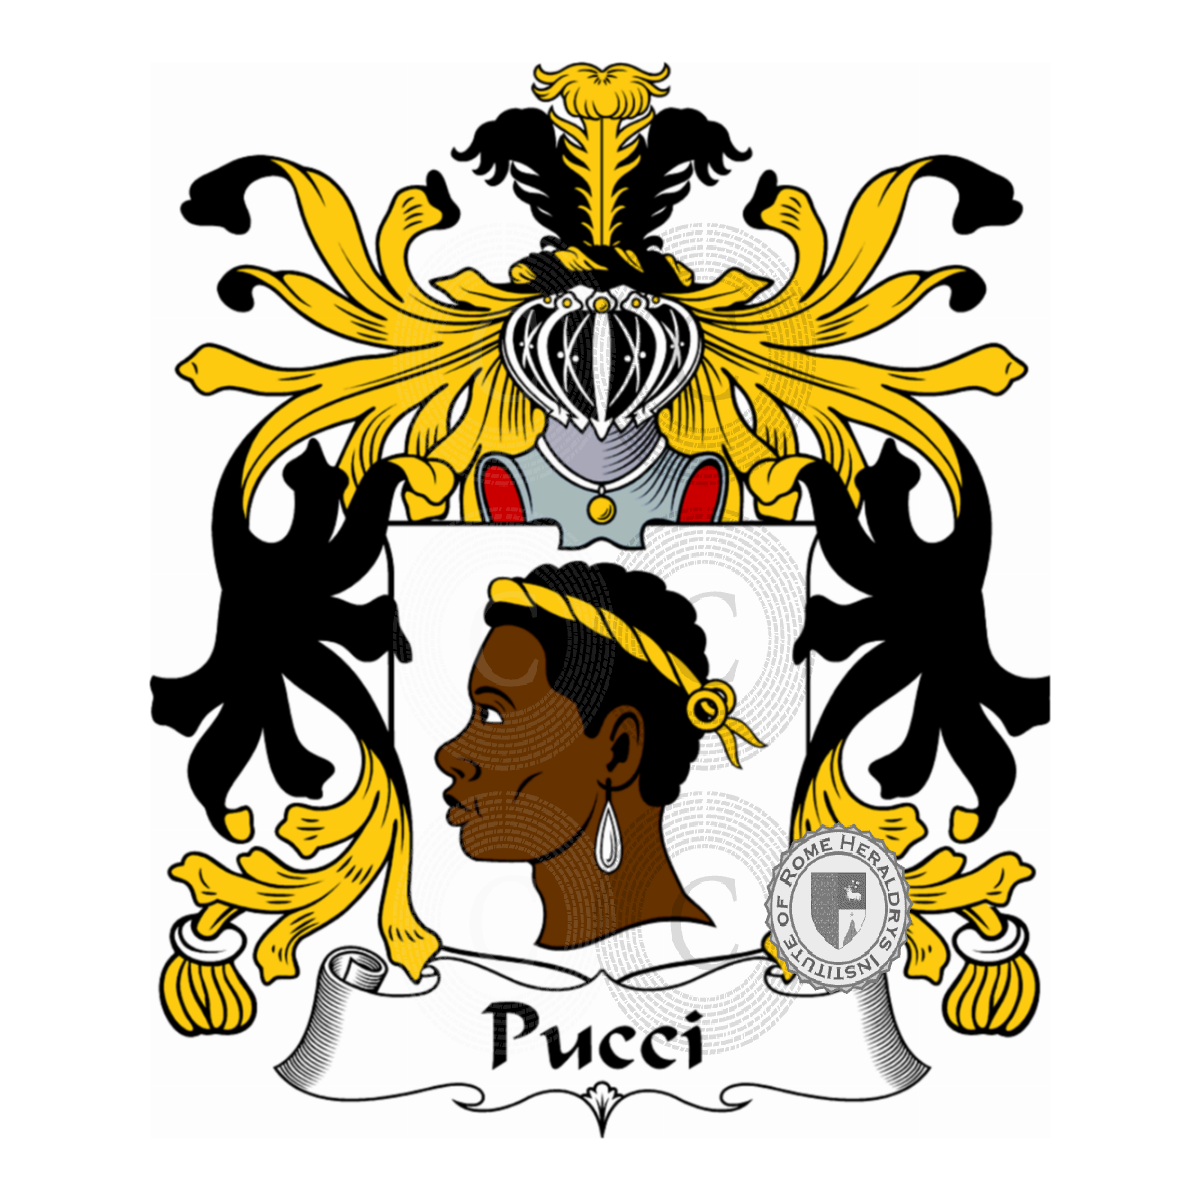 Brasão da famíliaPucci, Pucci del Chiassolino,Pucci della Filicaia,Pucci delle Stelle,Pucci di Ponte,Pucci Franceschi,Puccio